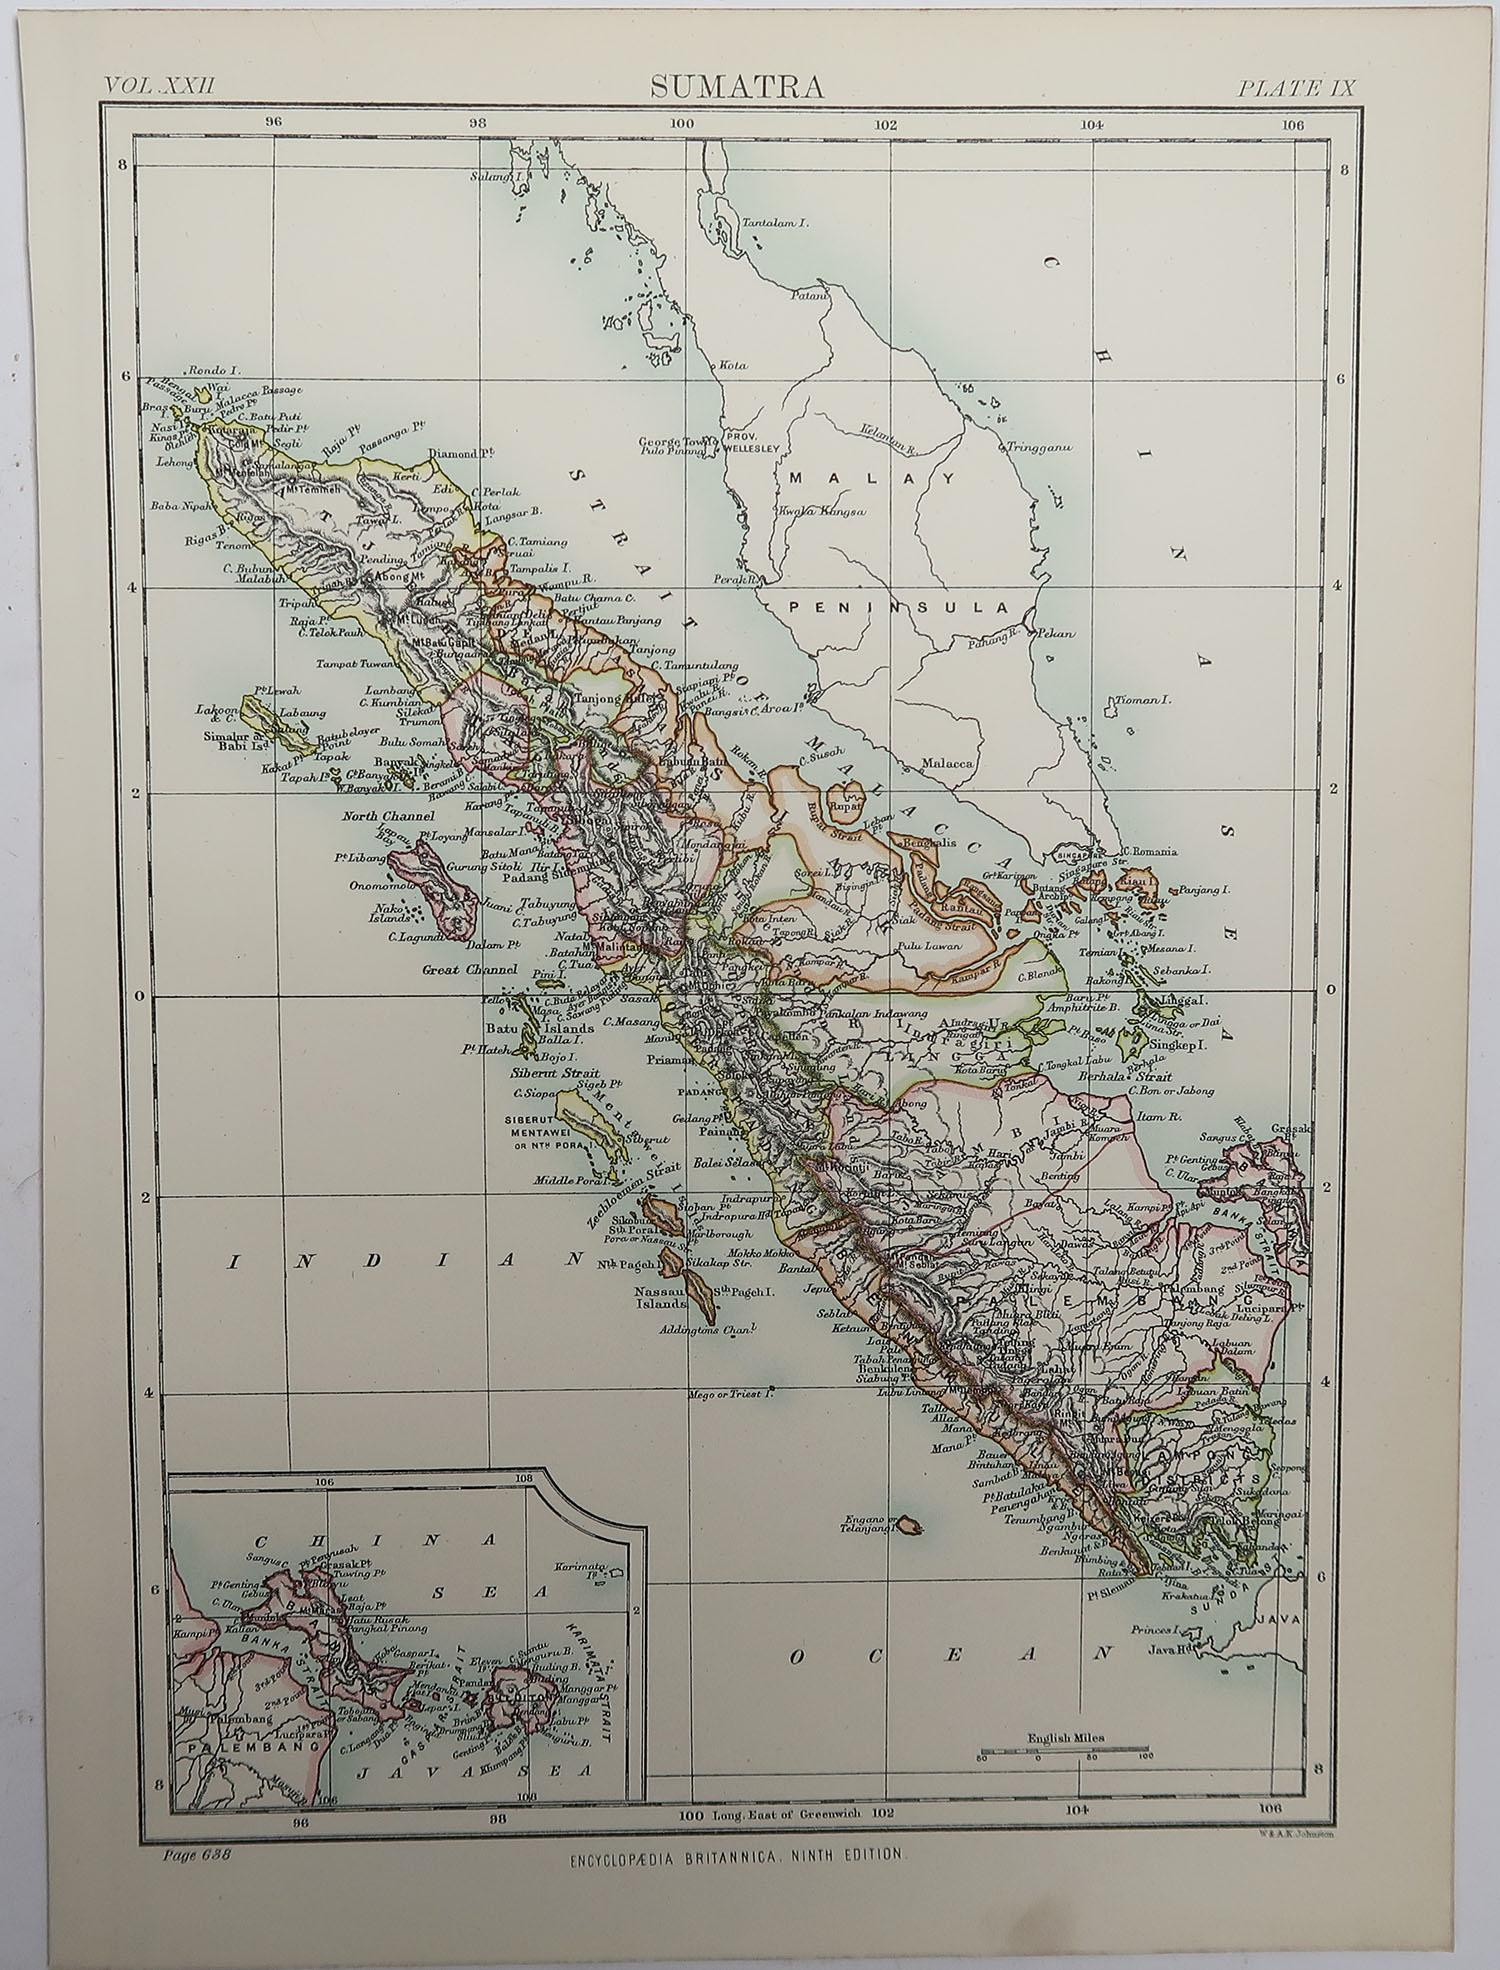 sumatra on map